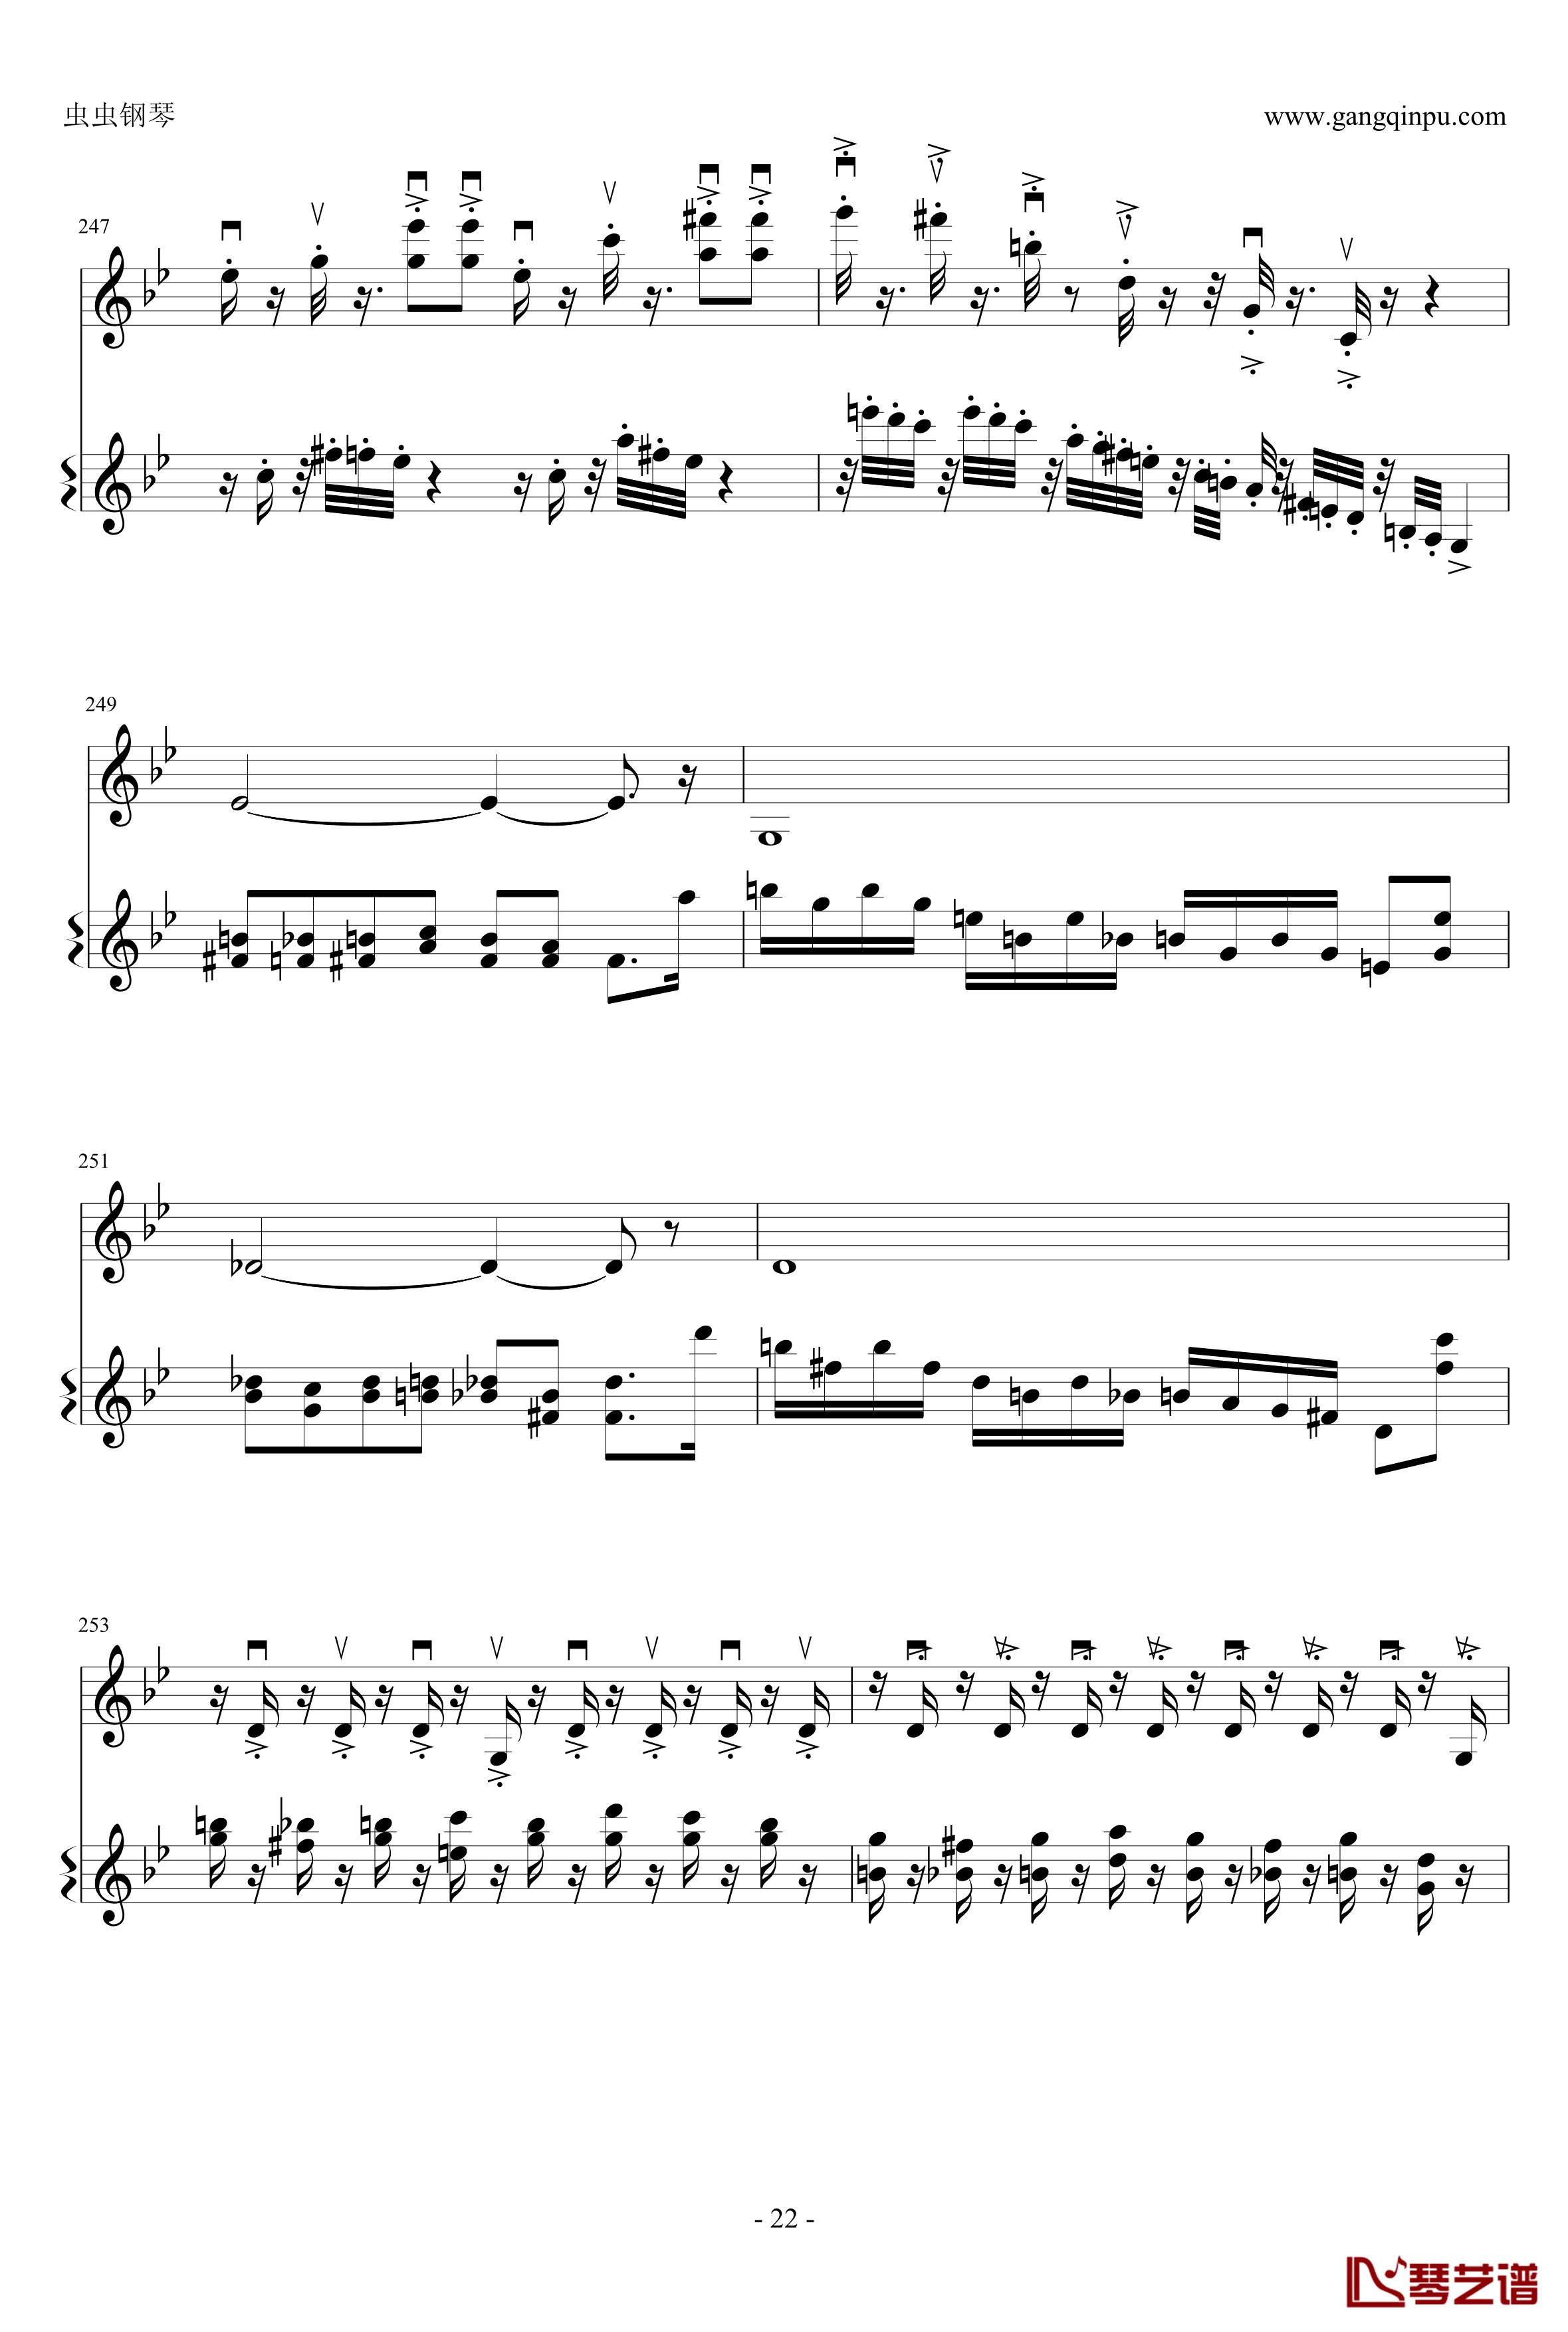 意大利国歌钢琴谱-变奏曲修改版-DXF22